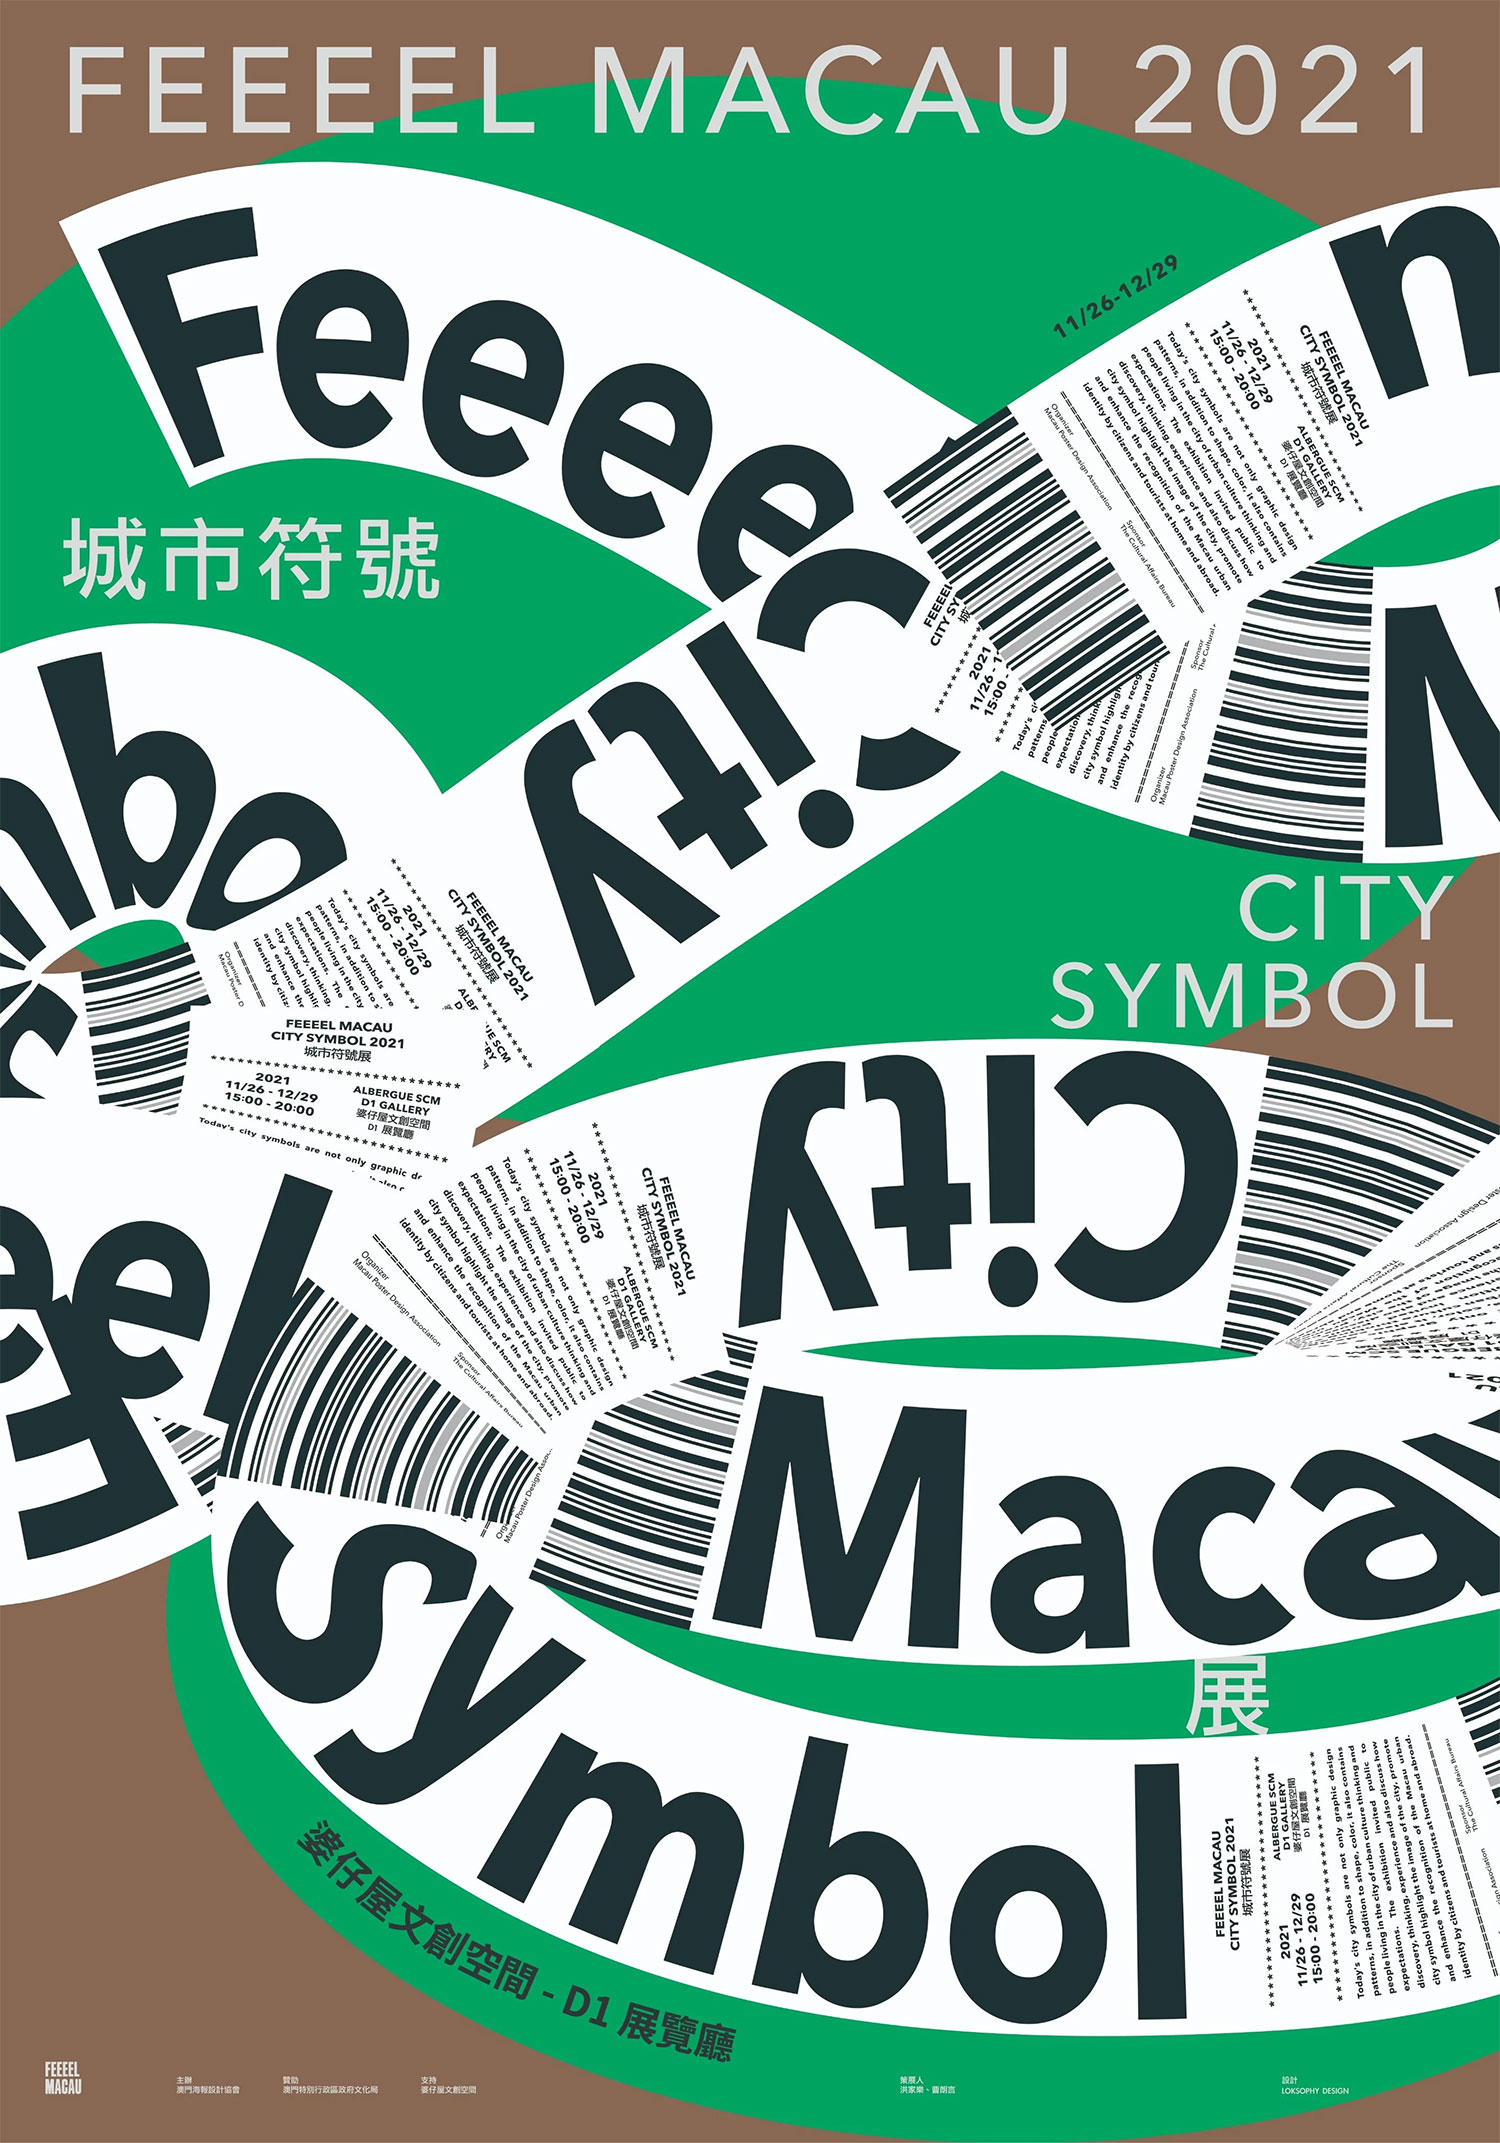 City Symbol 澳门城市符号展